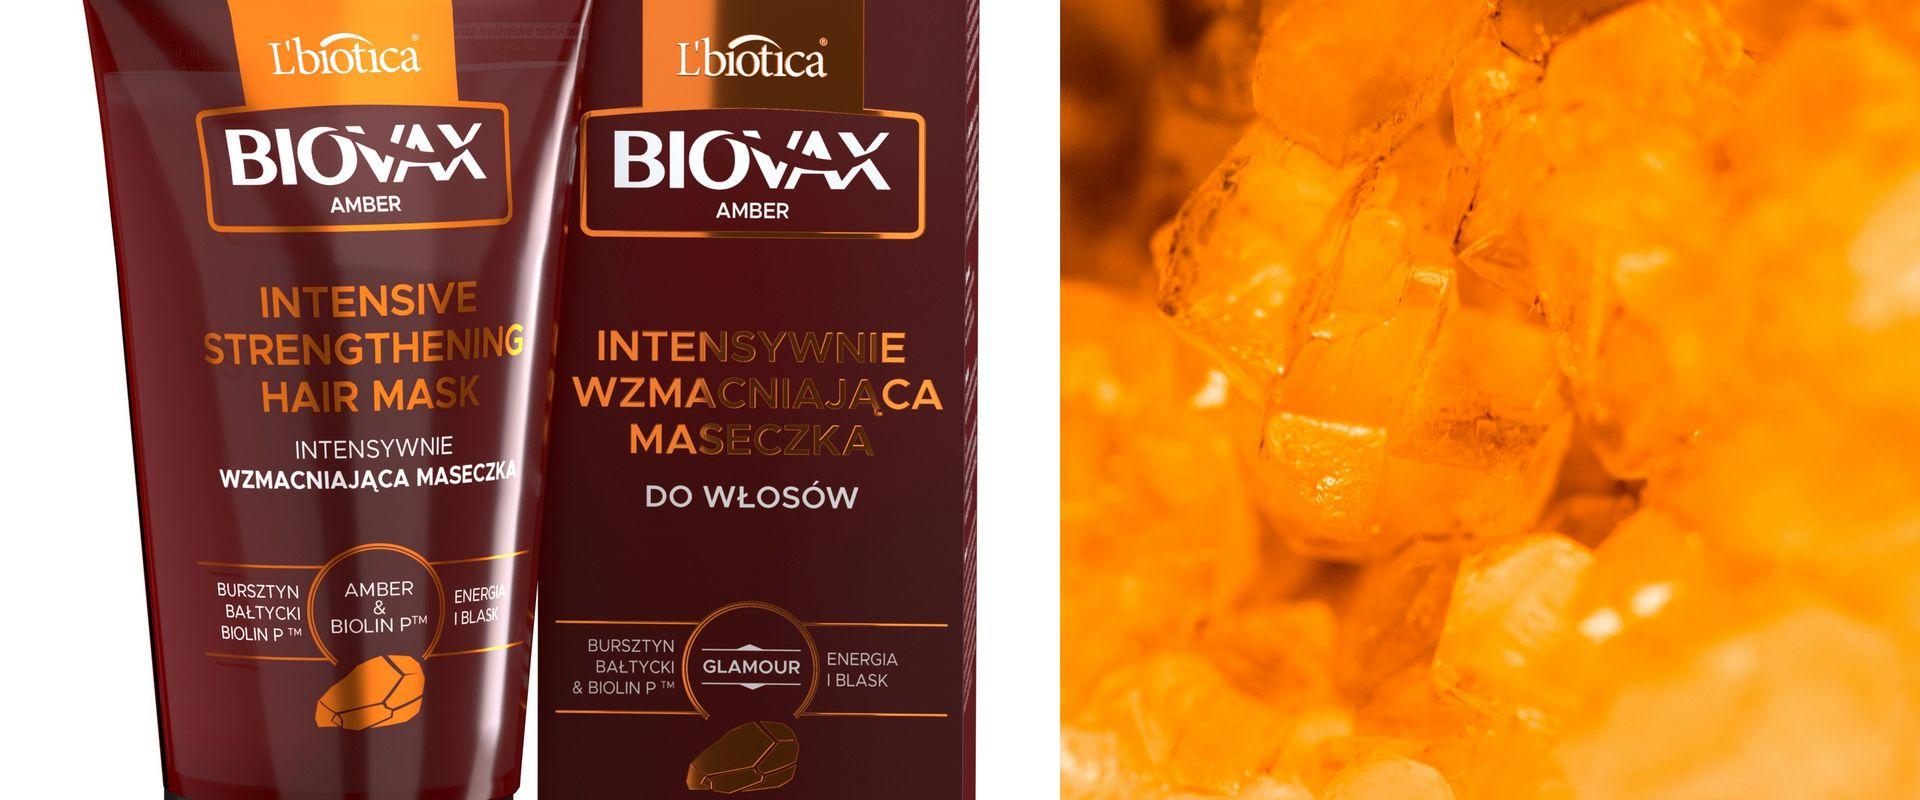 Bursztyn bałtycki w linii Biovax Amber